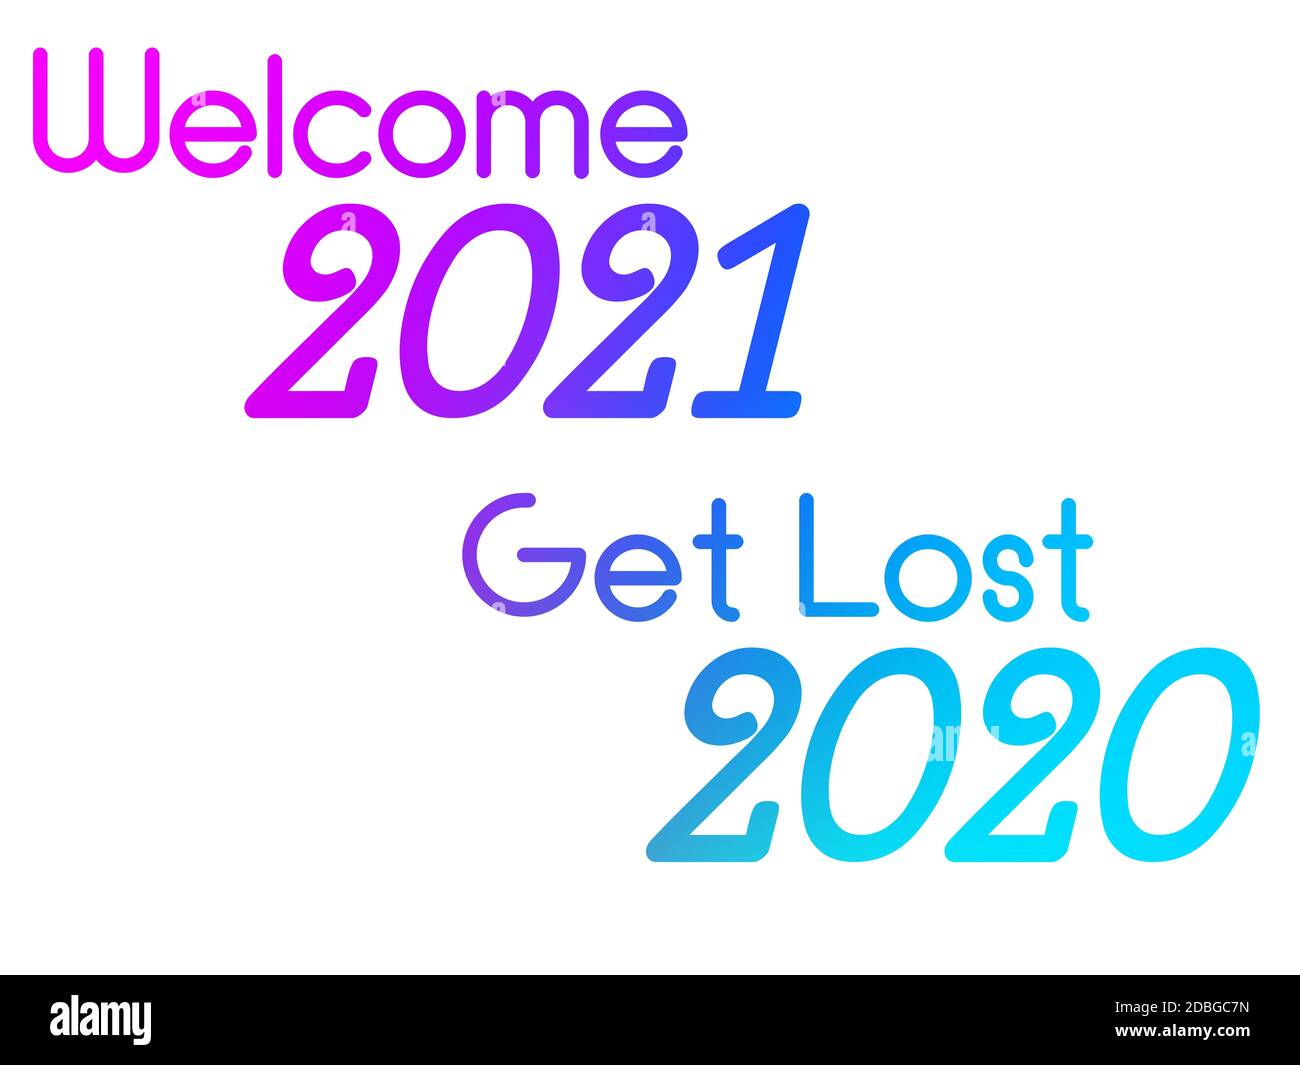 Una ilustración colorida de un feliz año nuevo con la fase de bienvenida 2021 perderse 2020. Foto de stock